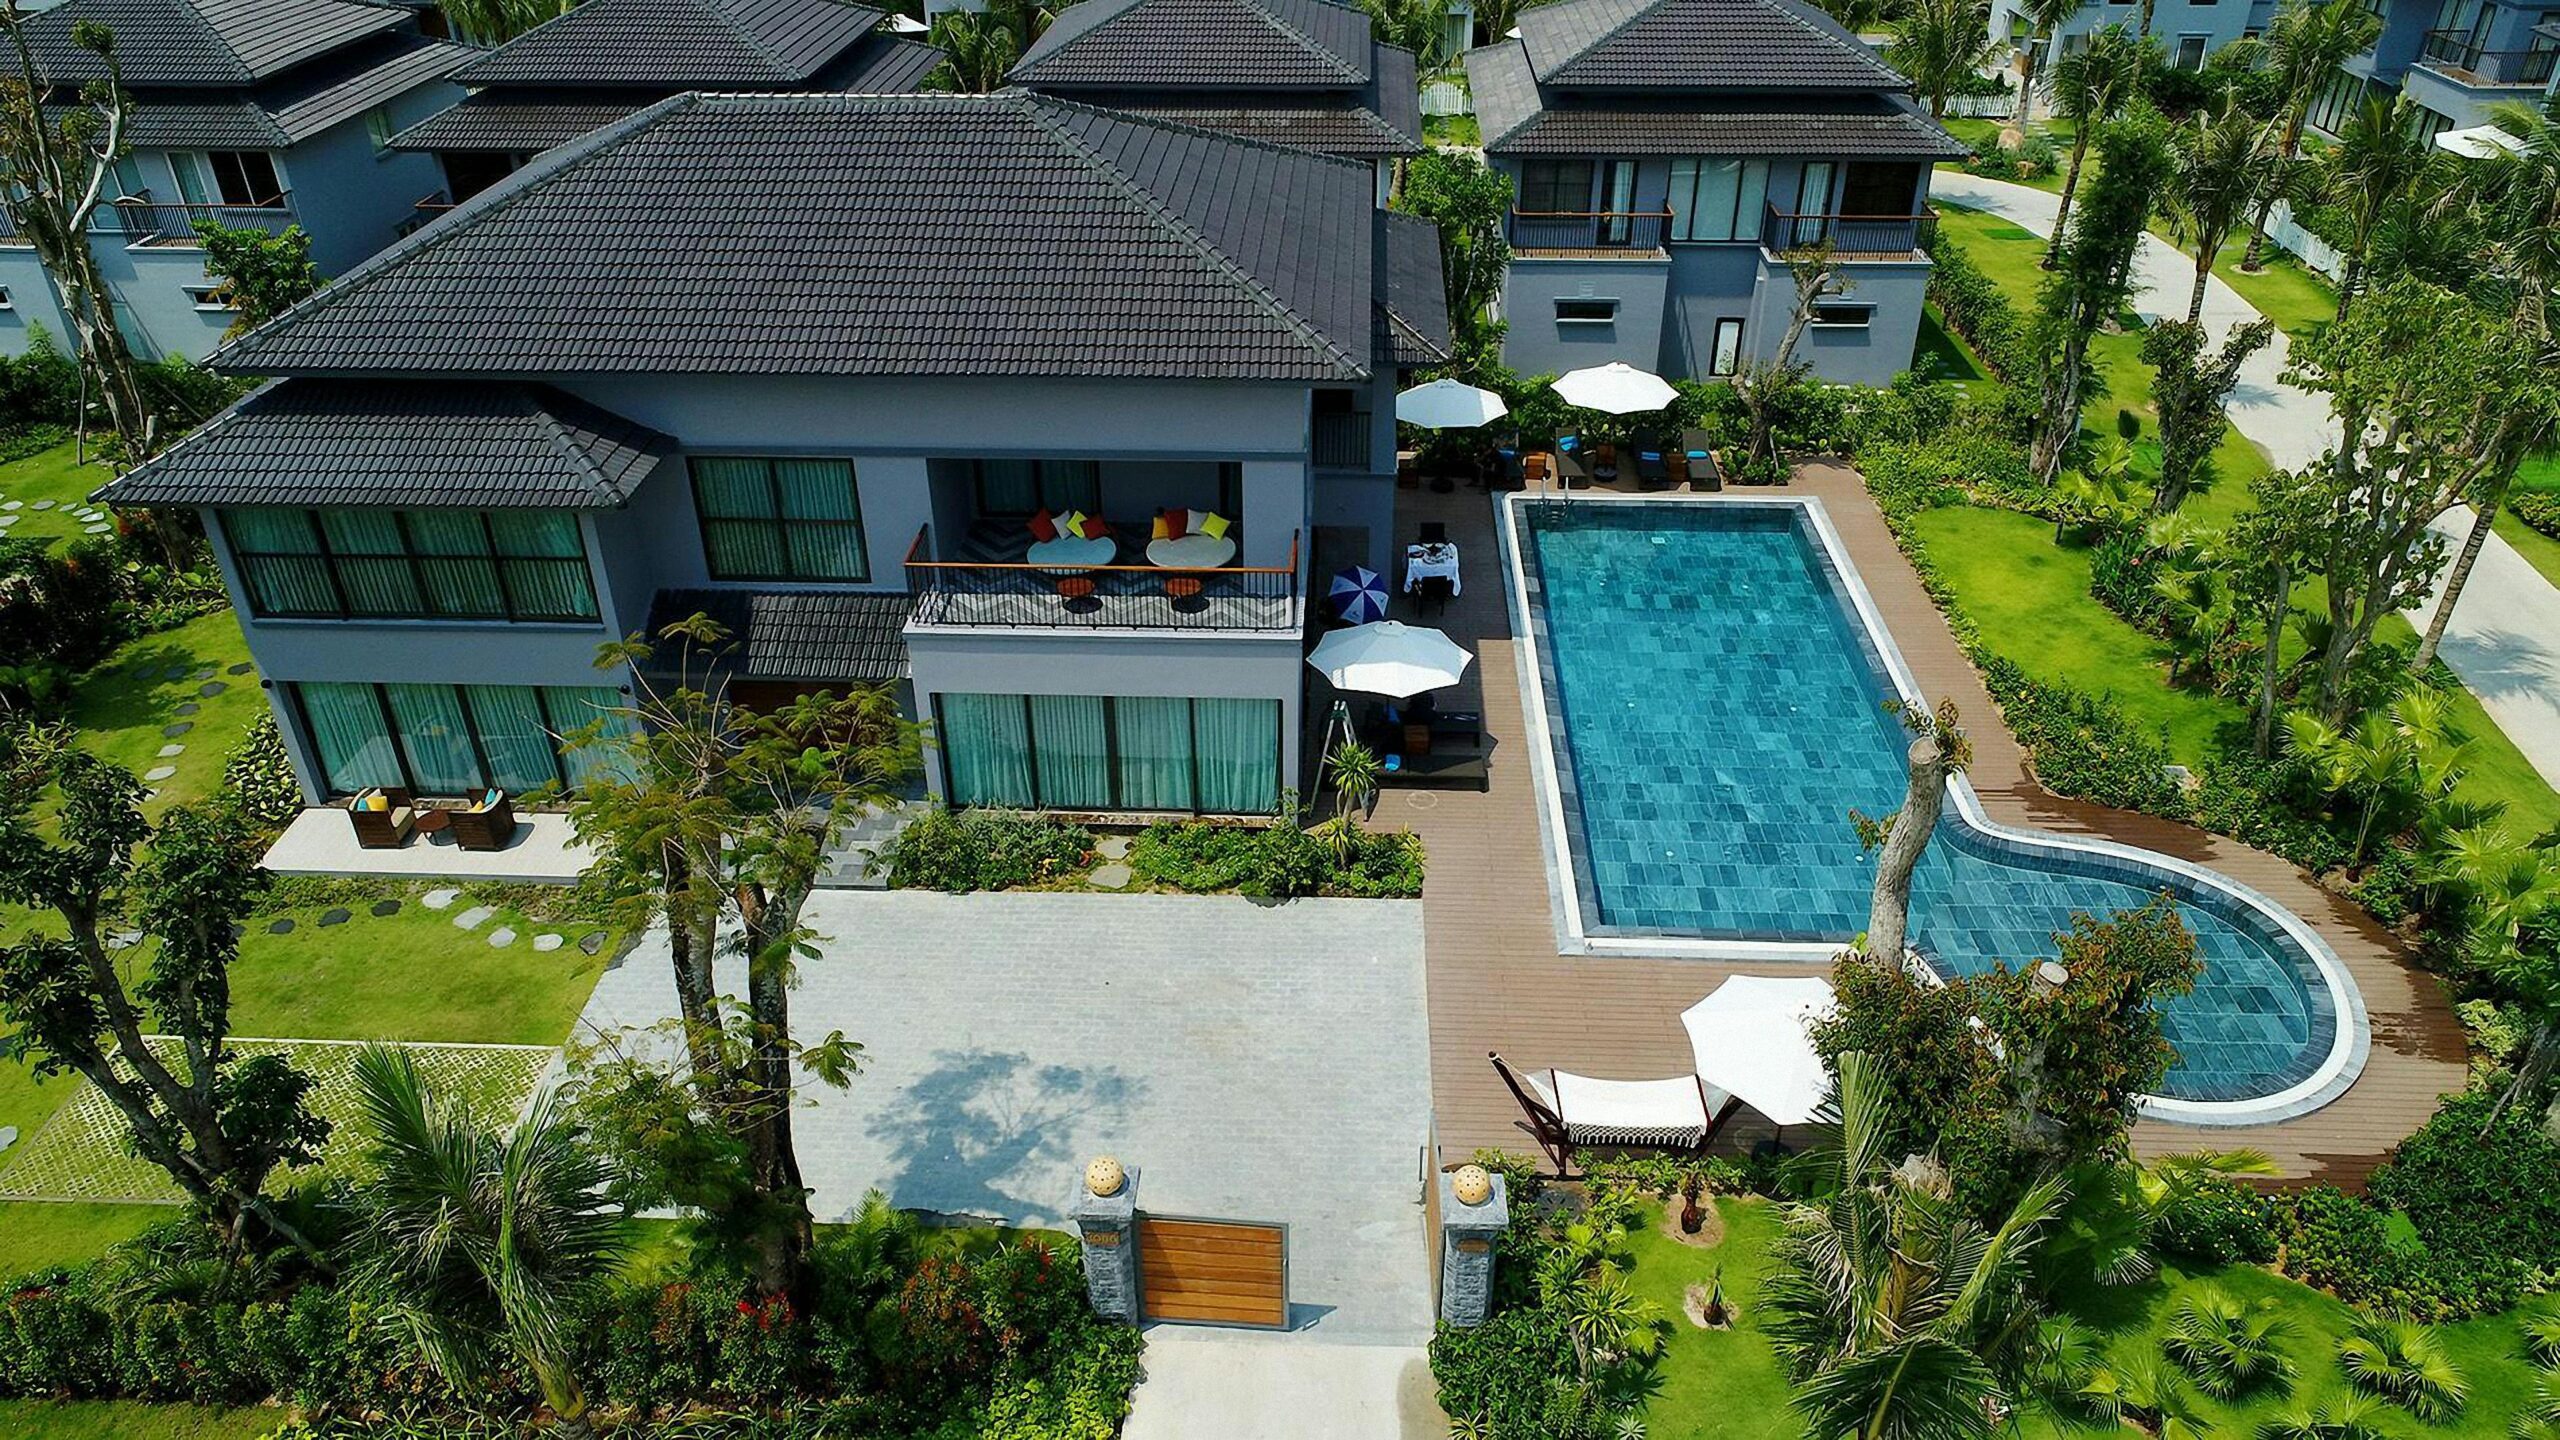 37518I will design home garden,pool,patio, villa landscape